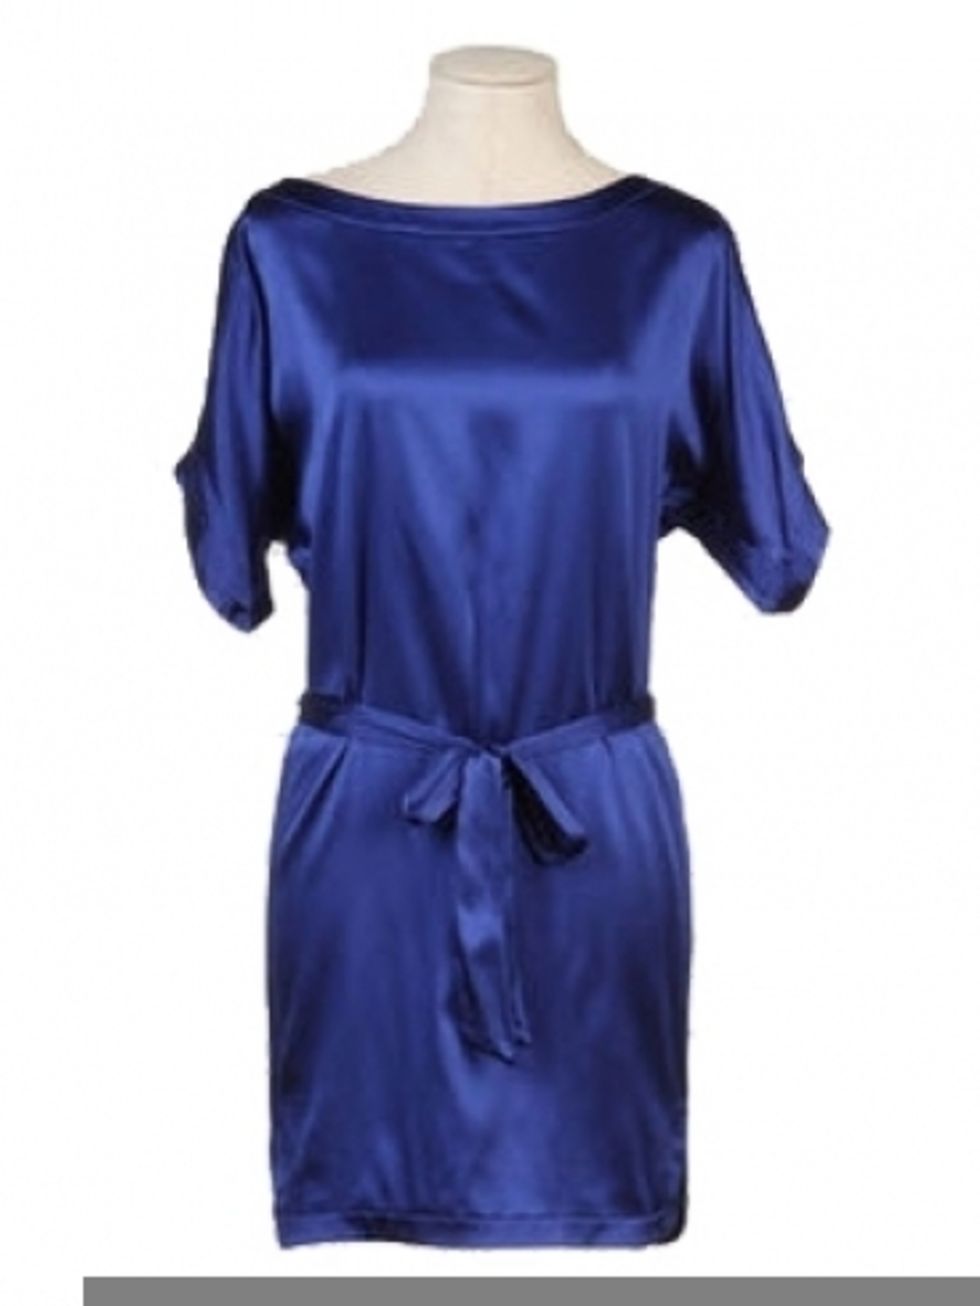 Blue, Sleeve, Shoulder, Textile, Dress, Purple, Lavender, Electric blue, One-piece garment, Cobalt blue, 